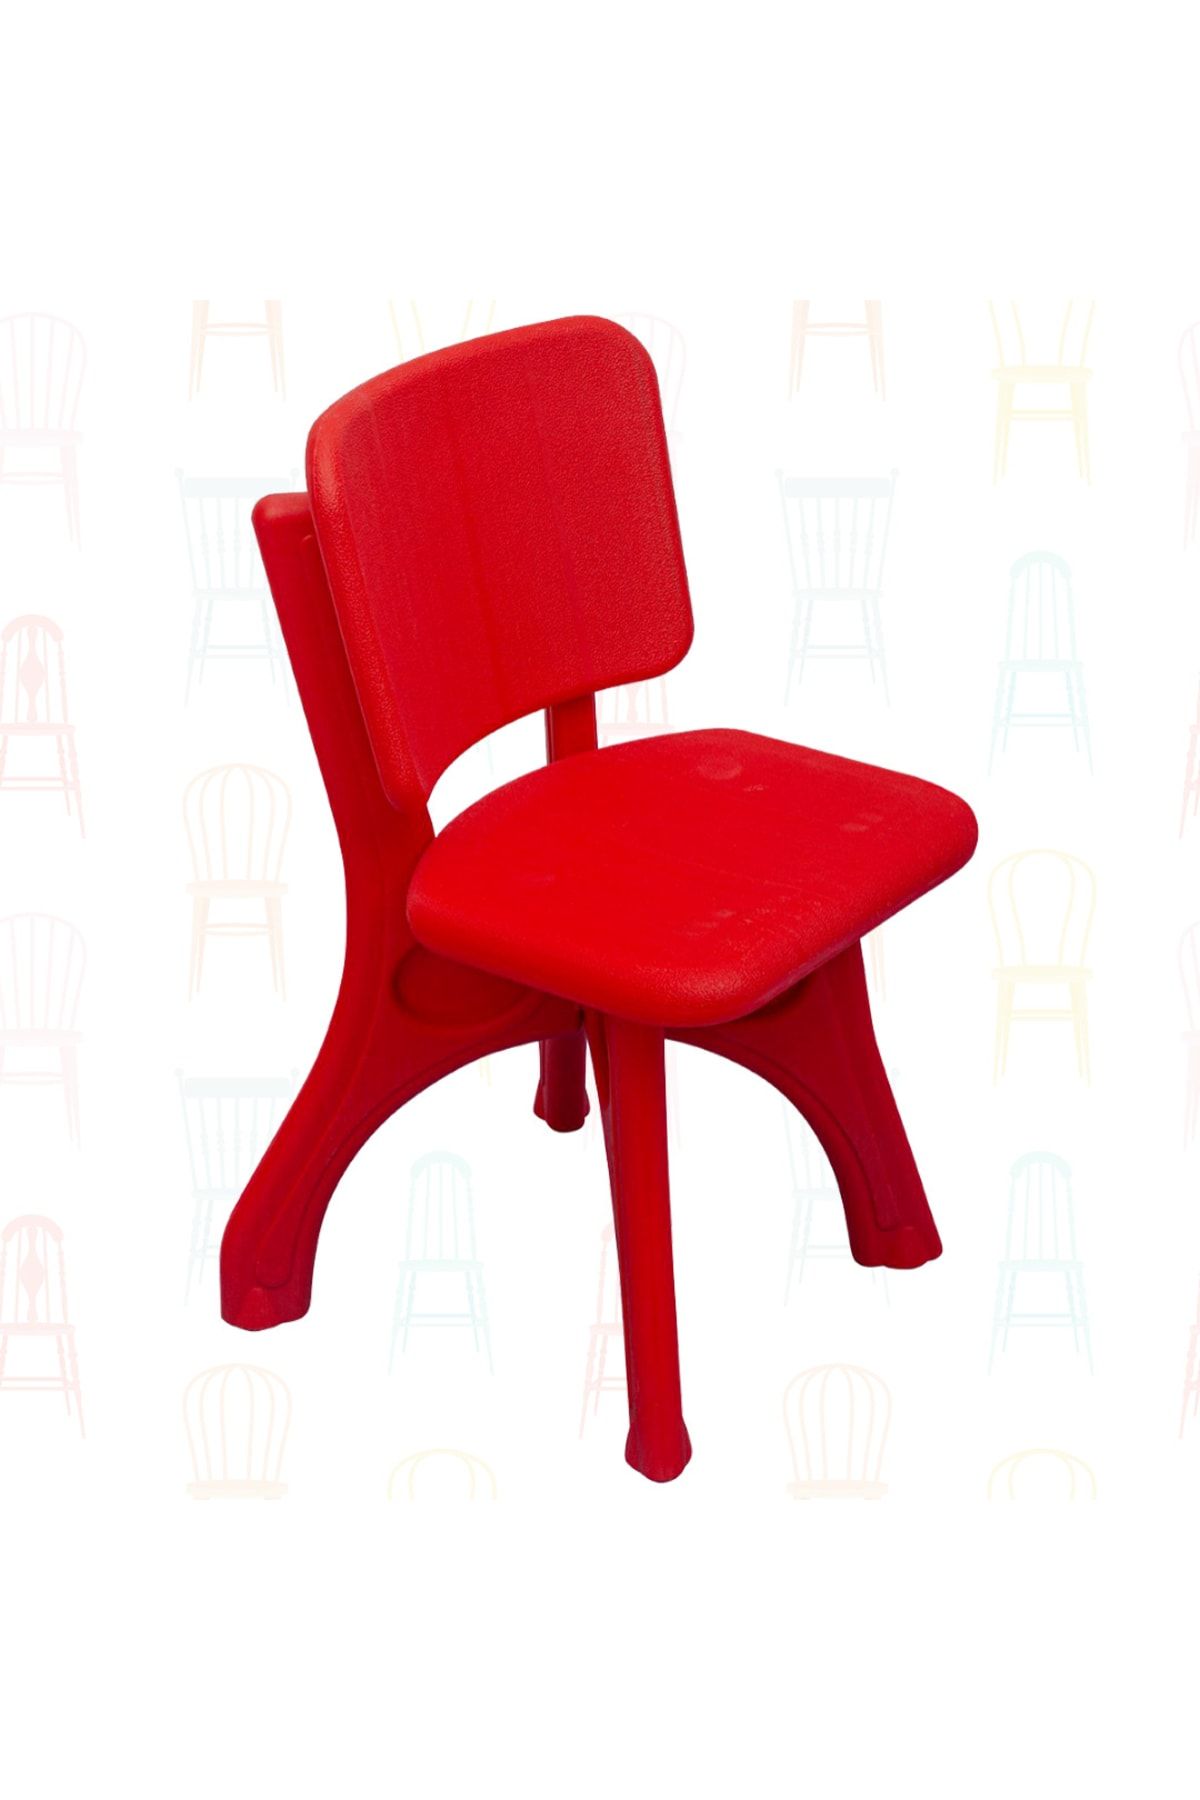 TOYSTAR Çocuk Sandalye - Anaokulu Sandalye - Çocuk Renkli Sandalye